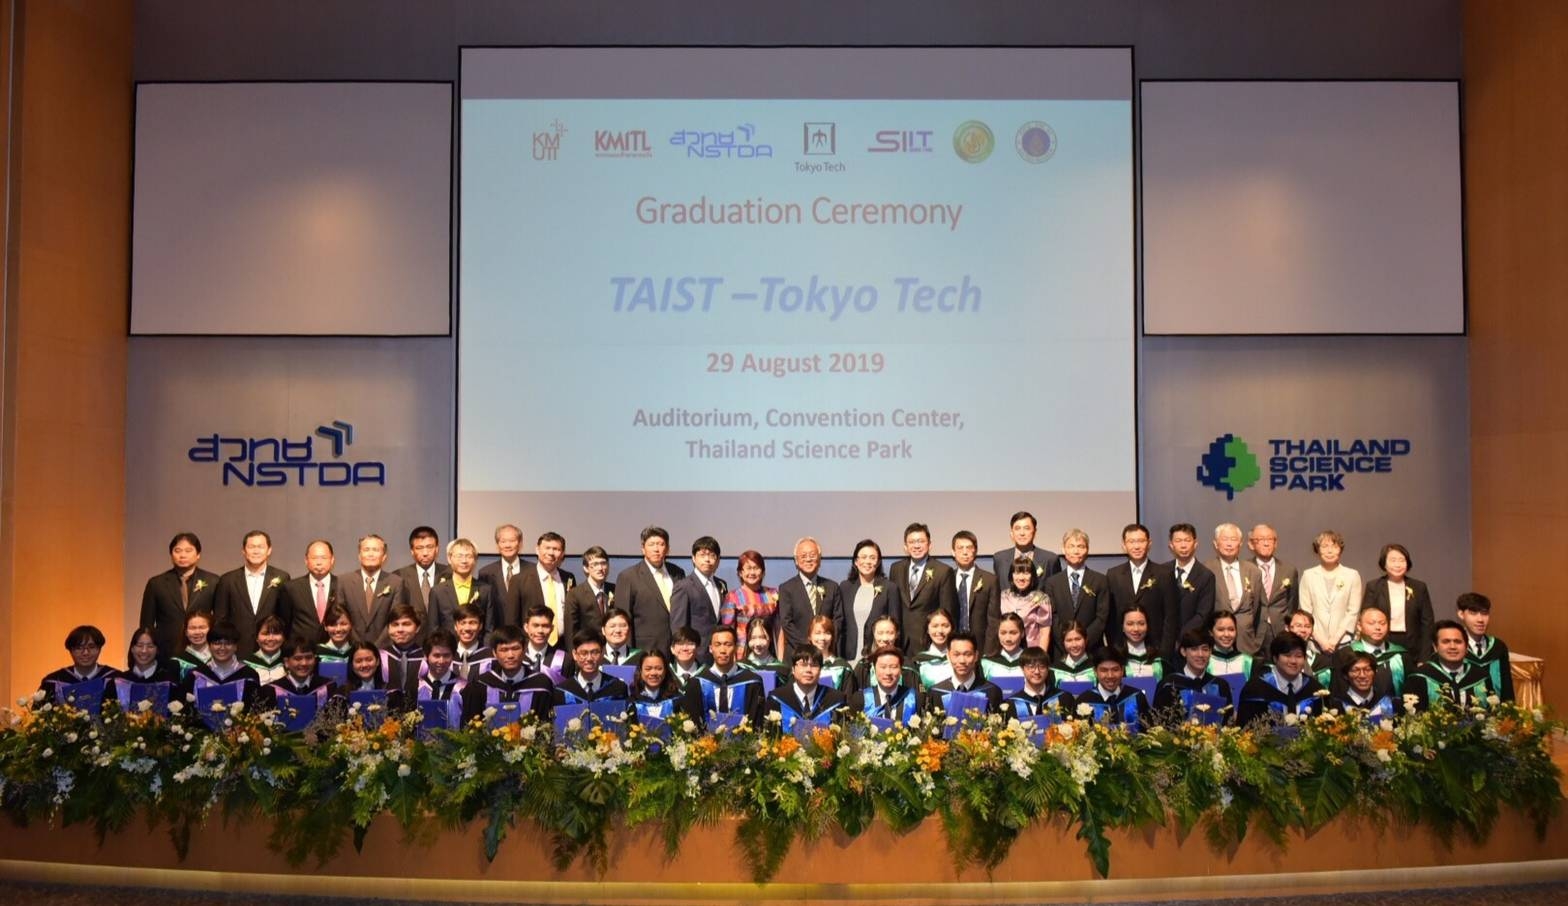 TAIST-Tokyo Tech 2018年度修了式を開催
